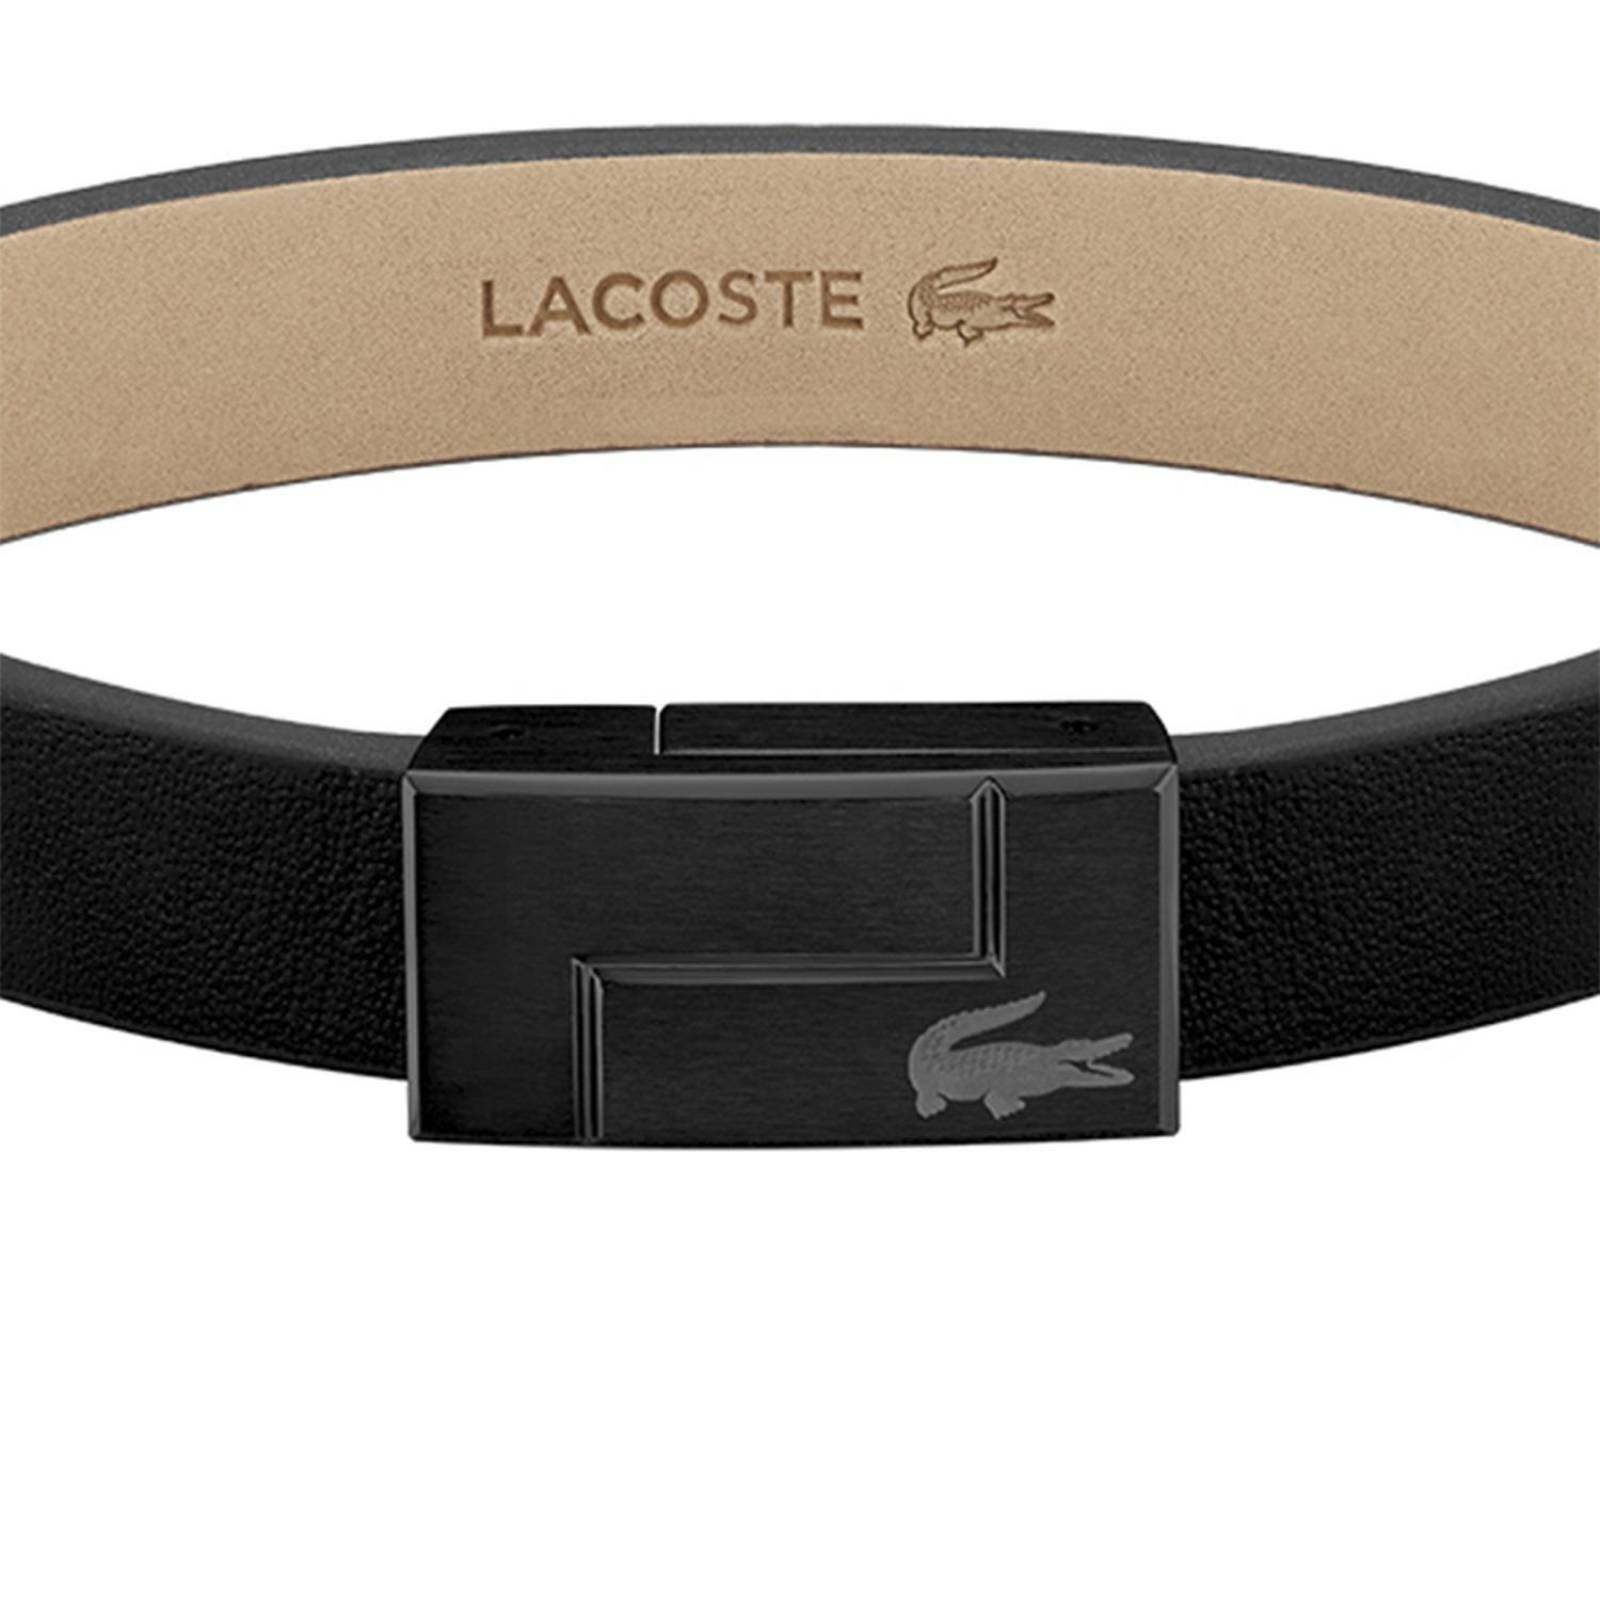 Las mejores ofertas en Banda de cuero relojes de pulsera para hombres  Lacoste